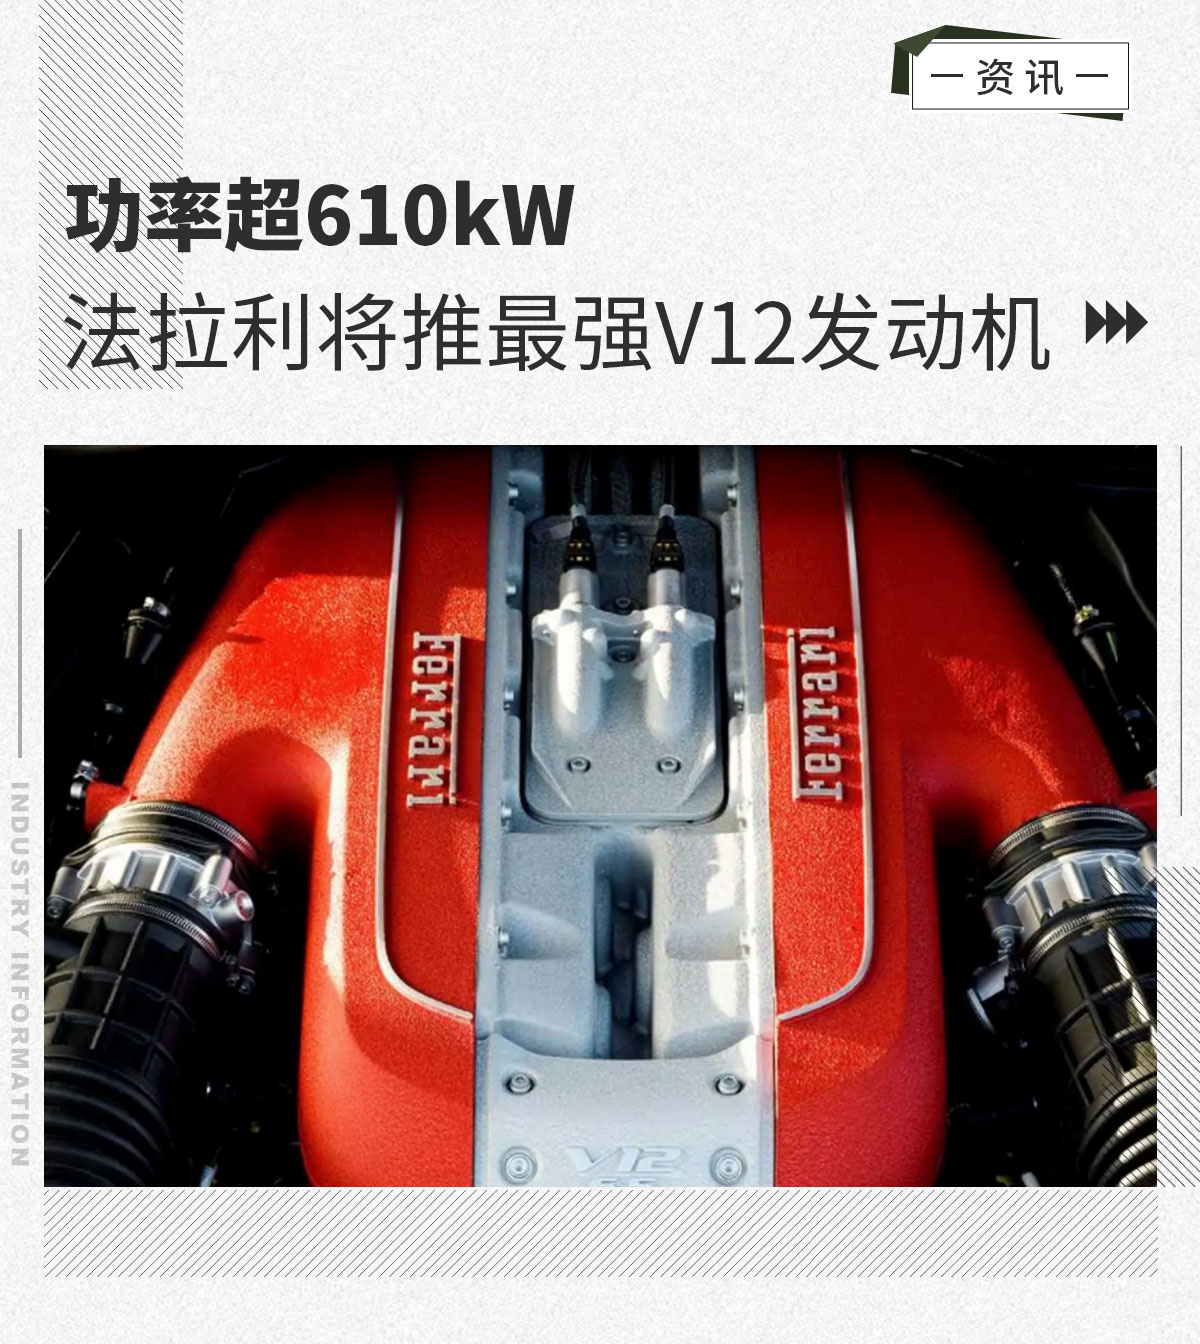 功率超610kW 法拉利将推最强V12自然吸气发动机